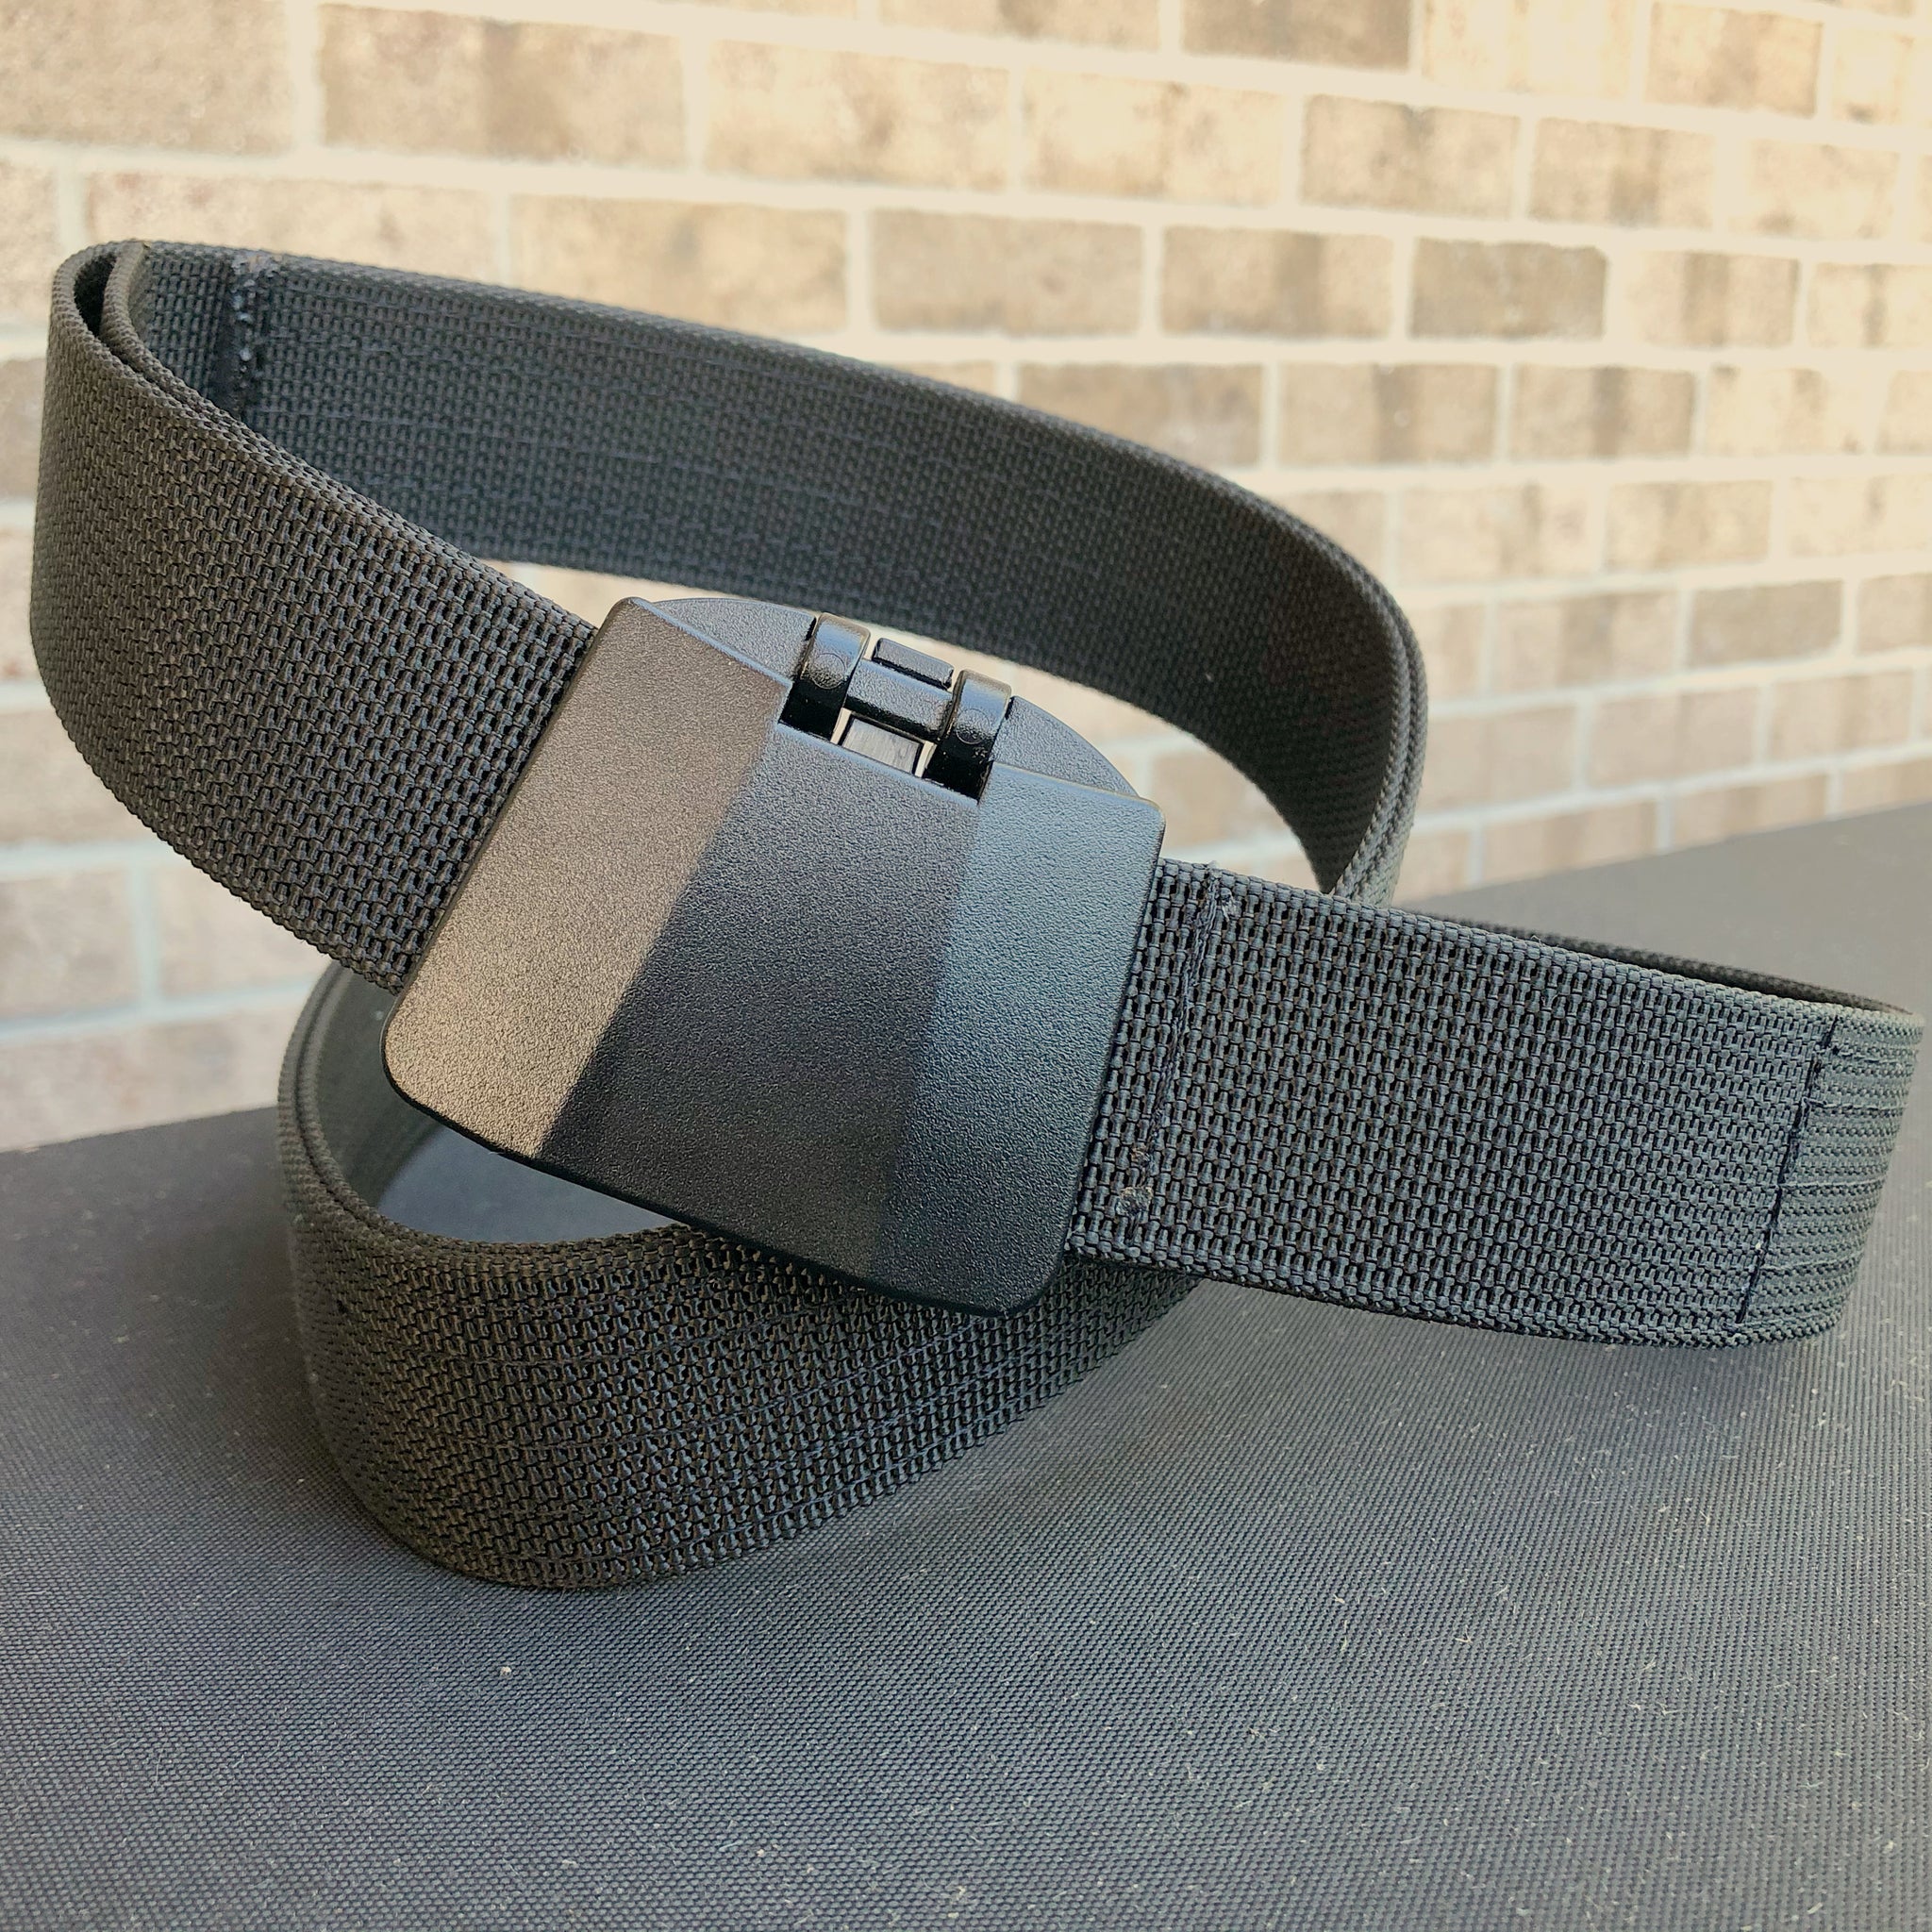 The A-Frame™ Belt- Shaped Like You